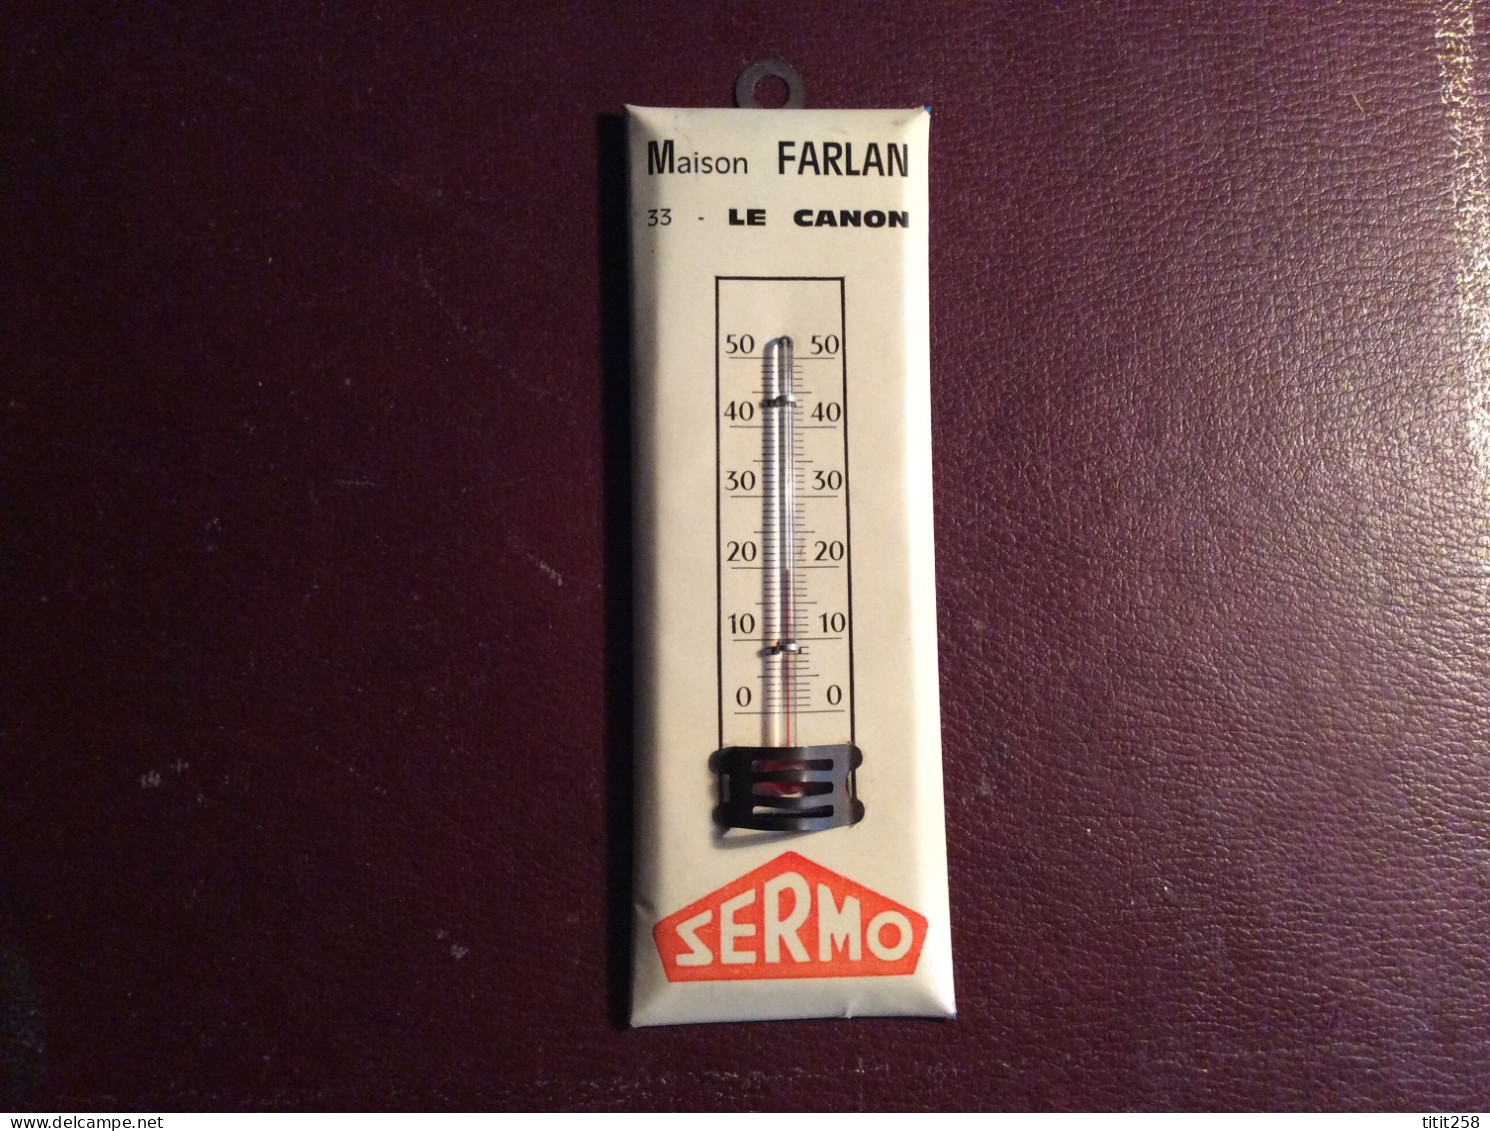 Joli Thermométre Glacoide  Publicitaire Magasin SERMO  / LE CANON 33 CAP FERRET Bassin D'arcachon GIRONDE - Plaques En Tôle (après 1960)